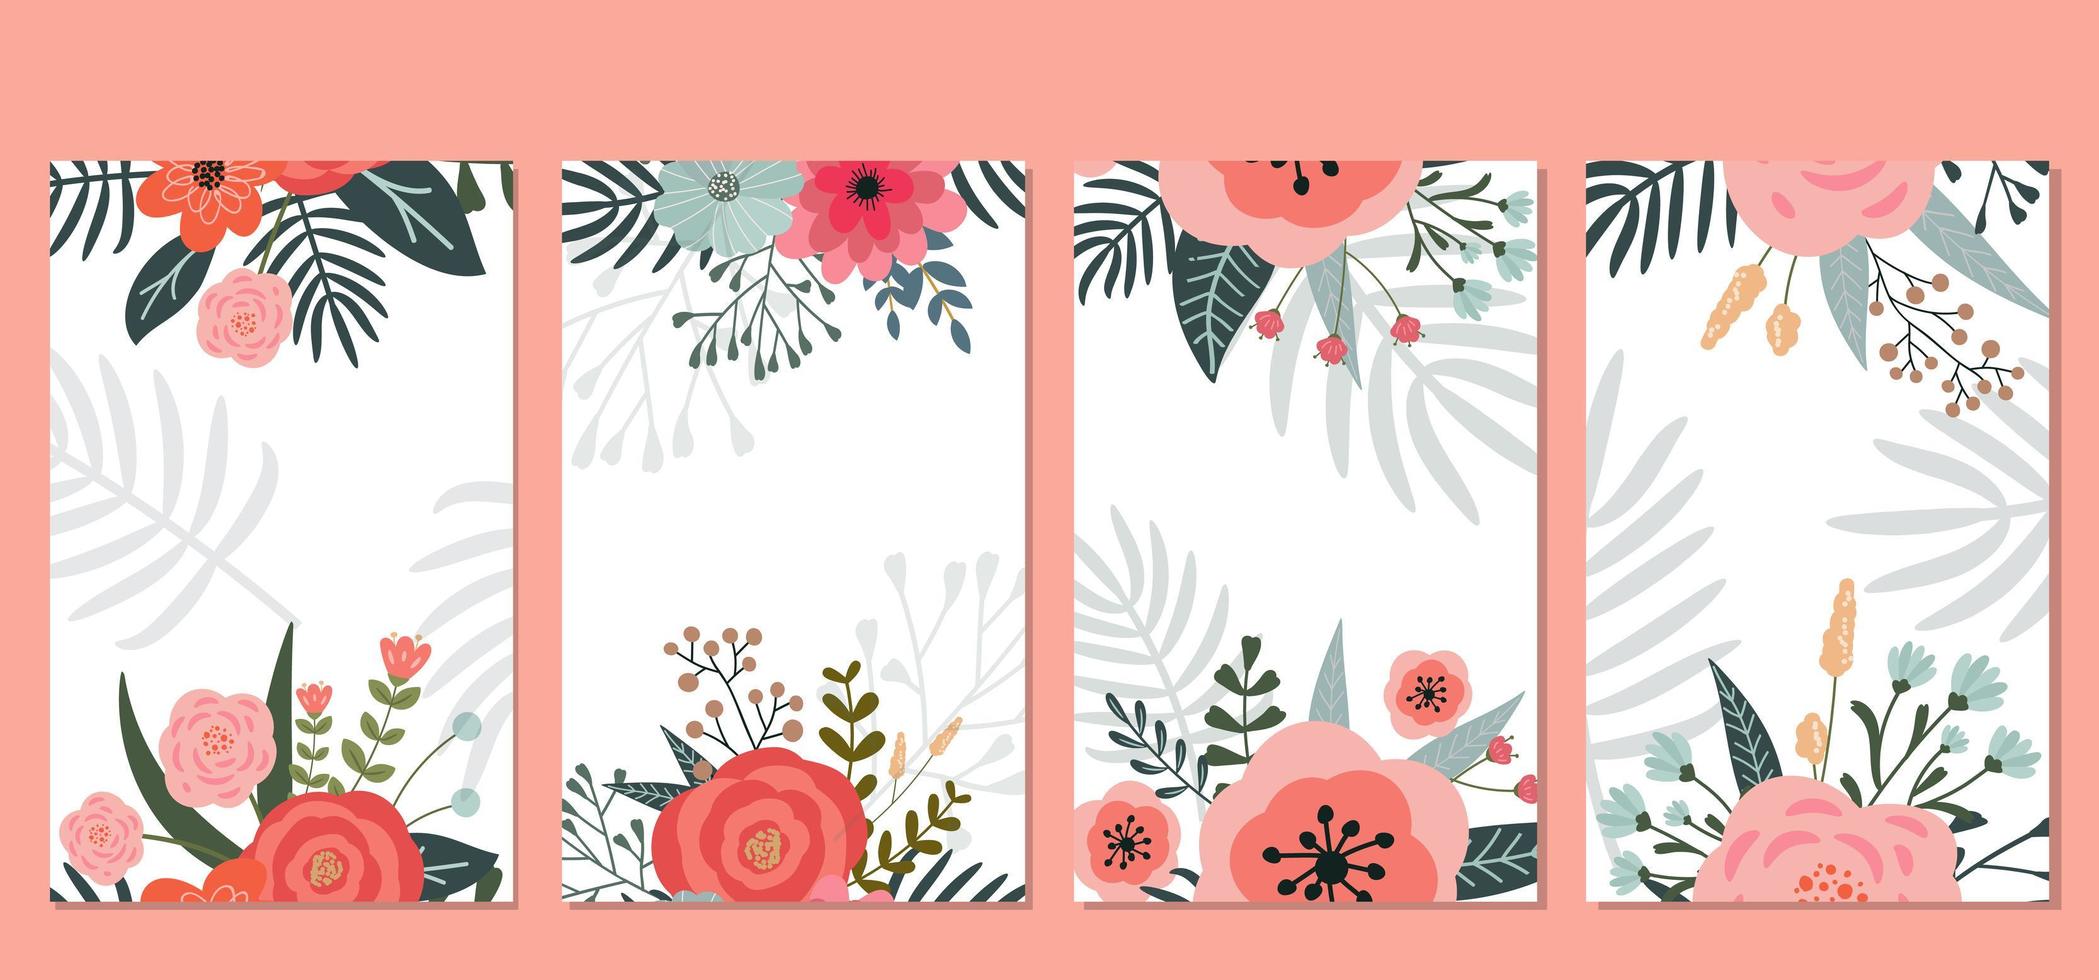 conjunto de postales con elementos de flores de primavera y elementos florales para su diseño. dibujado a mano. vector